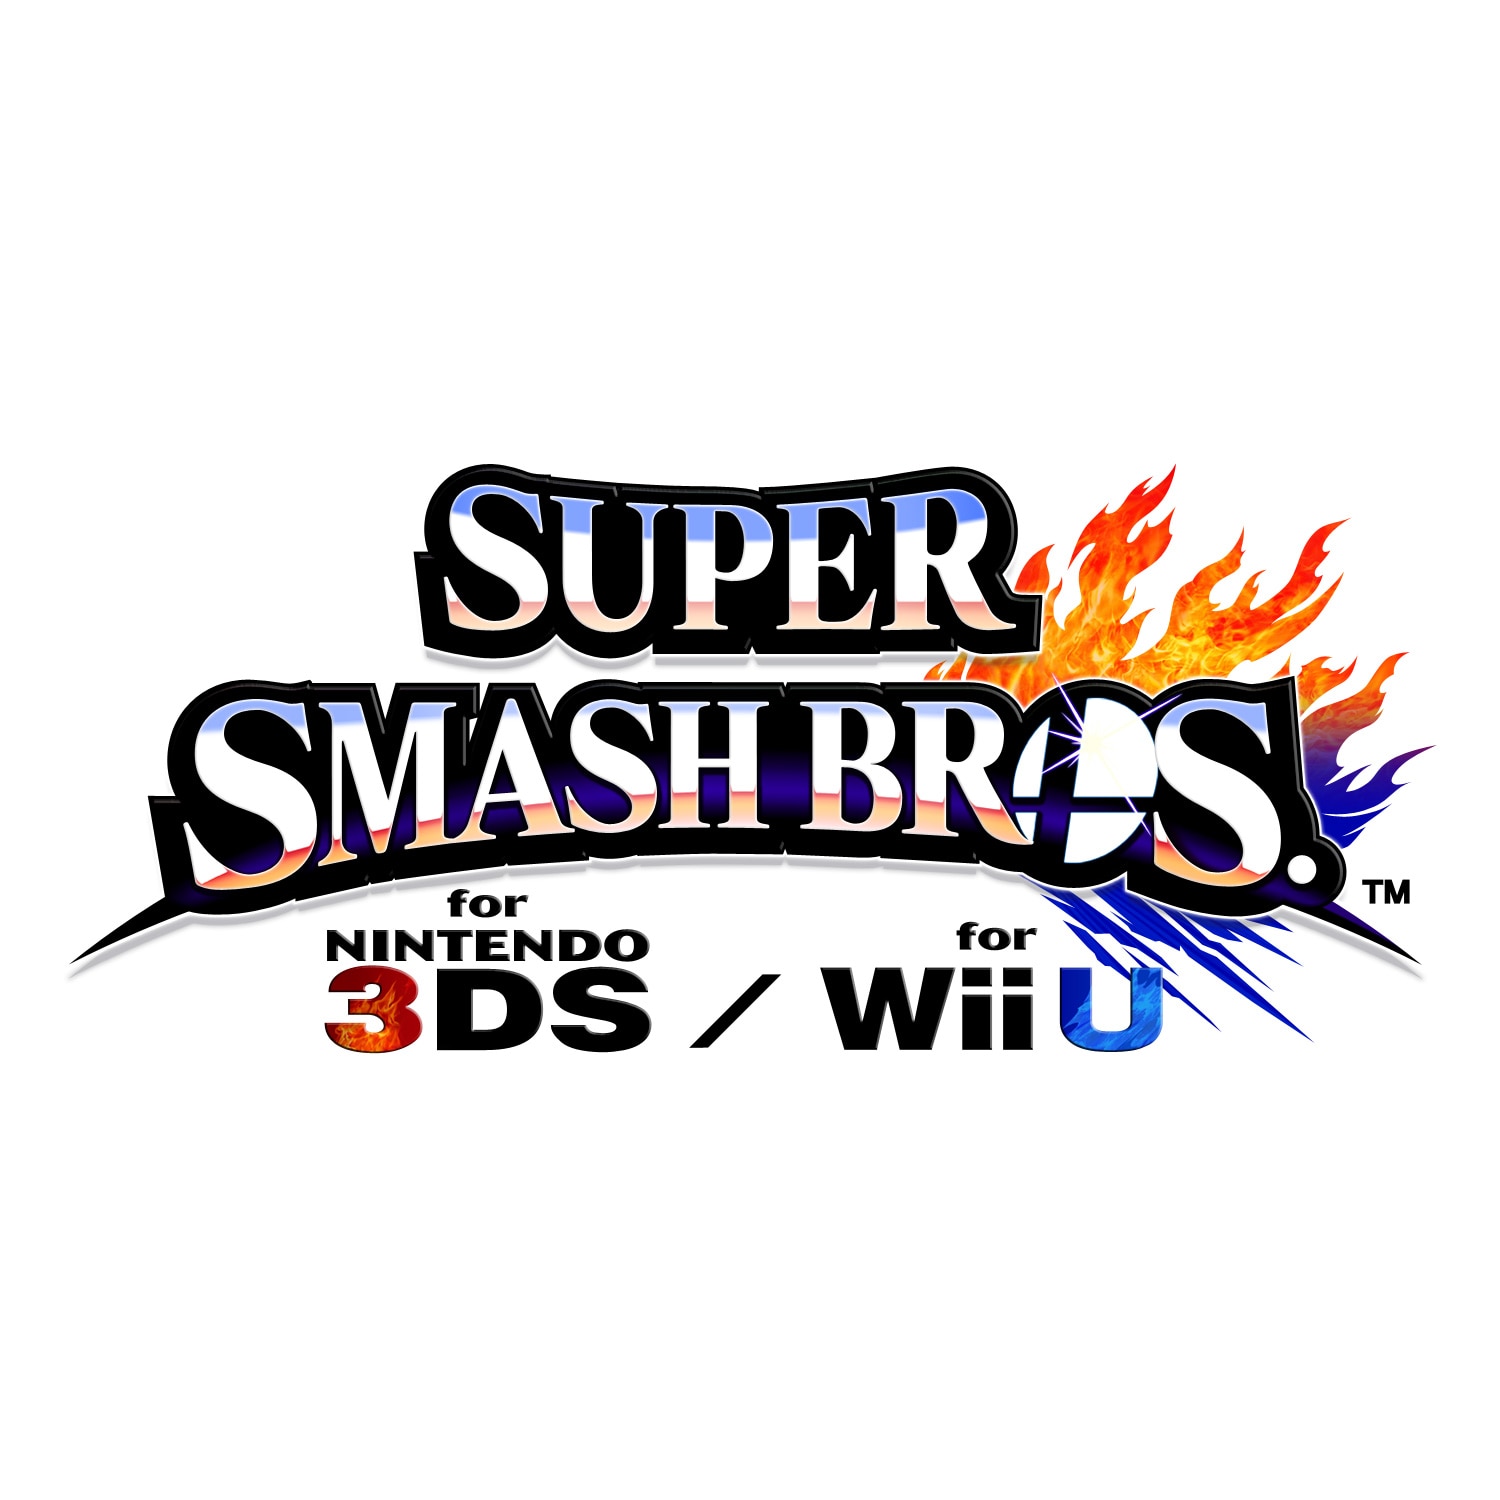 Super Smash Bros Wii Official Site – Super Smash Bros. for Nintendo 3DS and Wii U